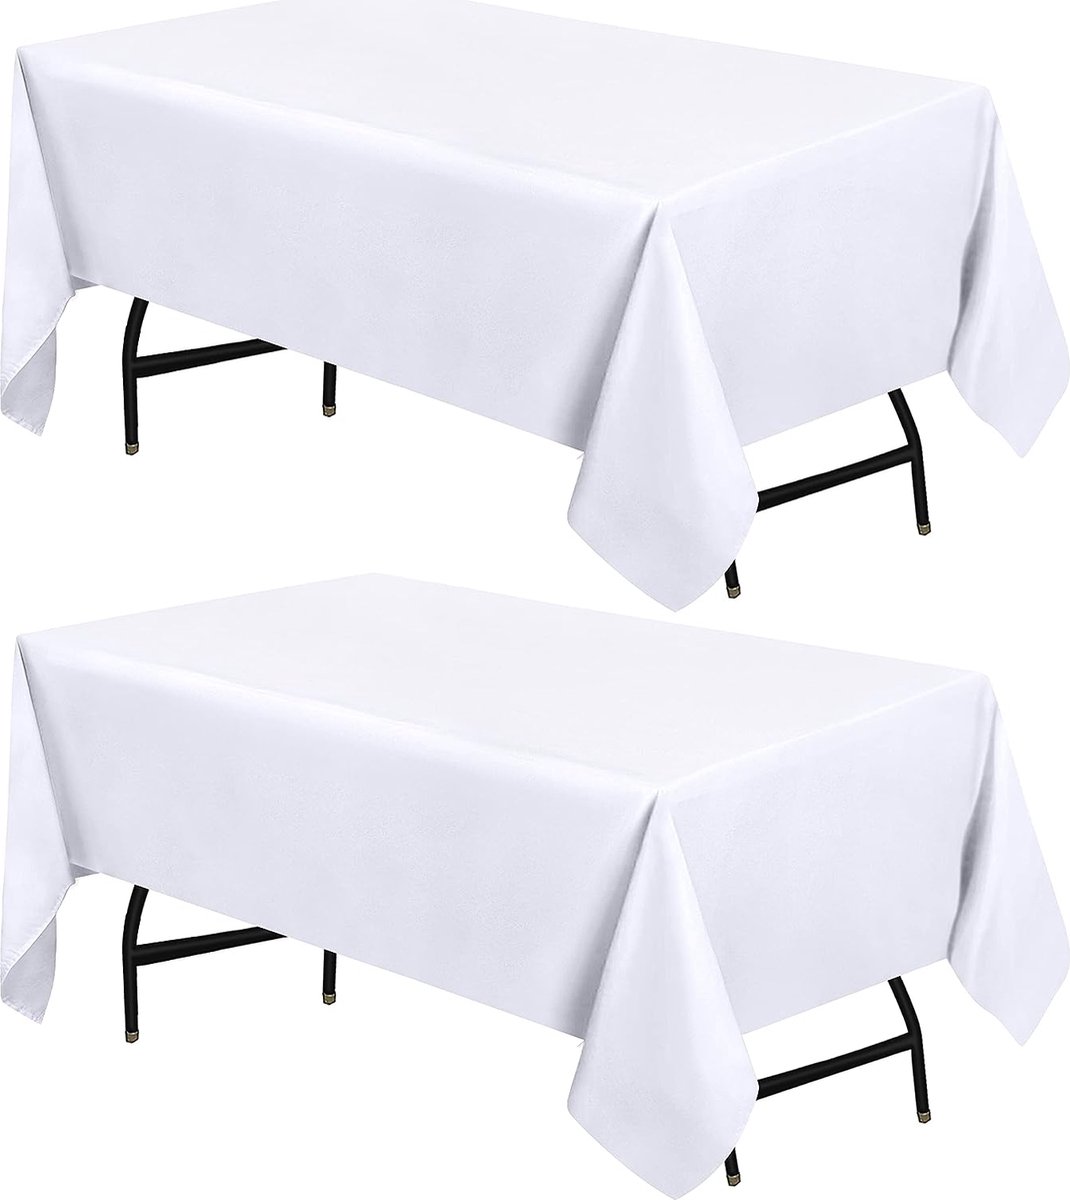 Polyester tafelkleed - 52x86 inch (132x218 cm) tafelkleed - machinewasbaar - ideaal voor feesten, evenementen, bruiloften en restaurants (set van 2, wit)